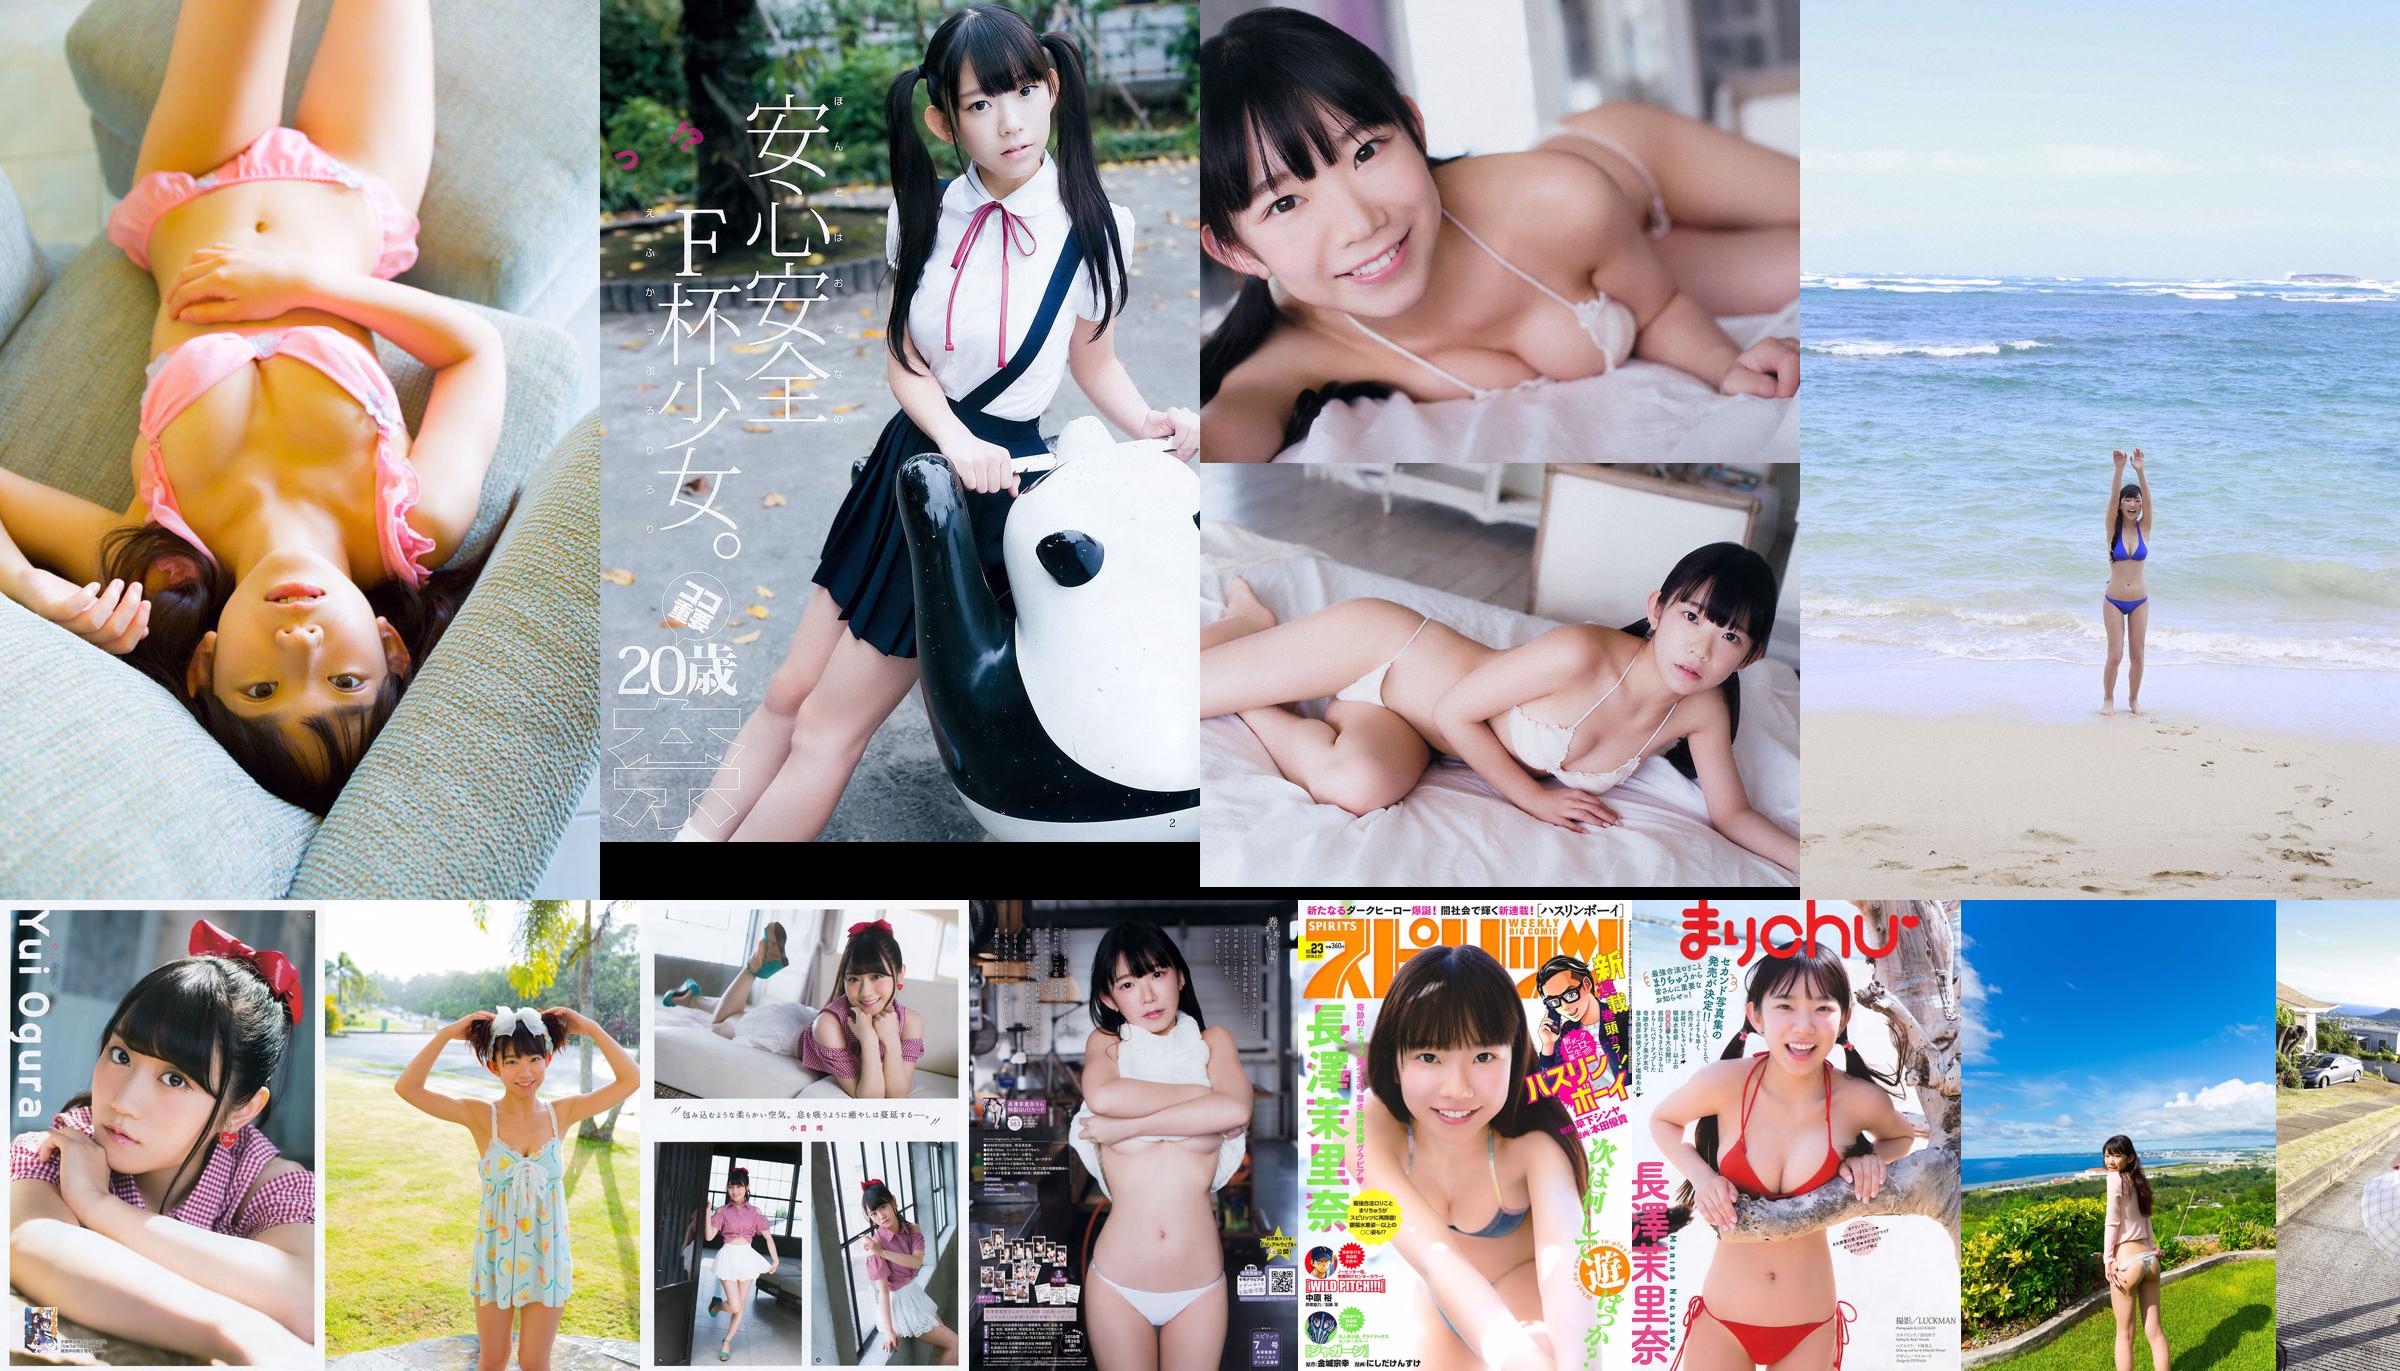 [WPB-net] Extra No. 584 Marina Nagasawa Nagasawa Morina "Bah っ て き た Legal Rory Big Tits !! Cảm giác tội lỗi" No.ace510 Trang 4